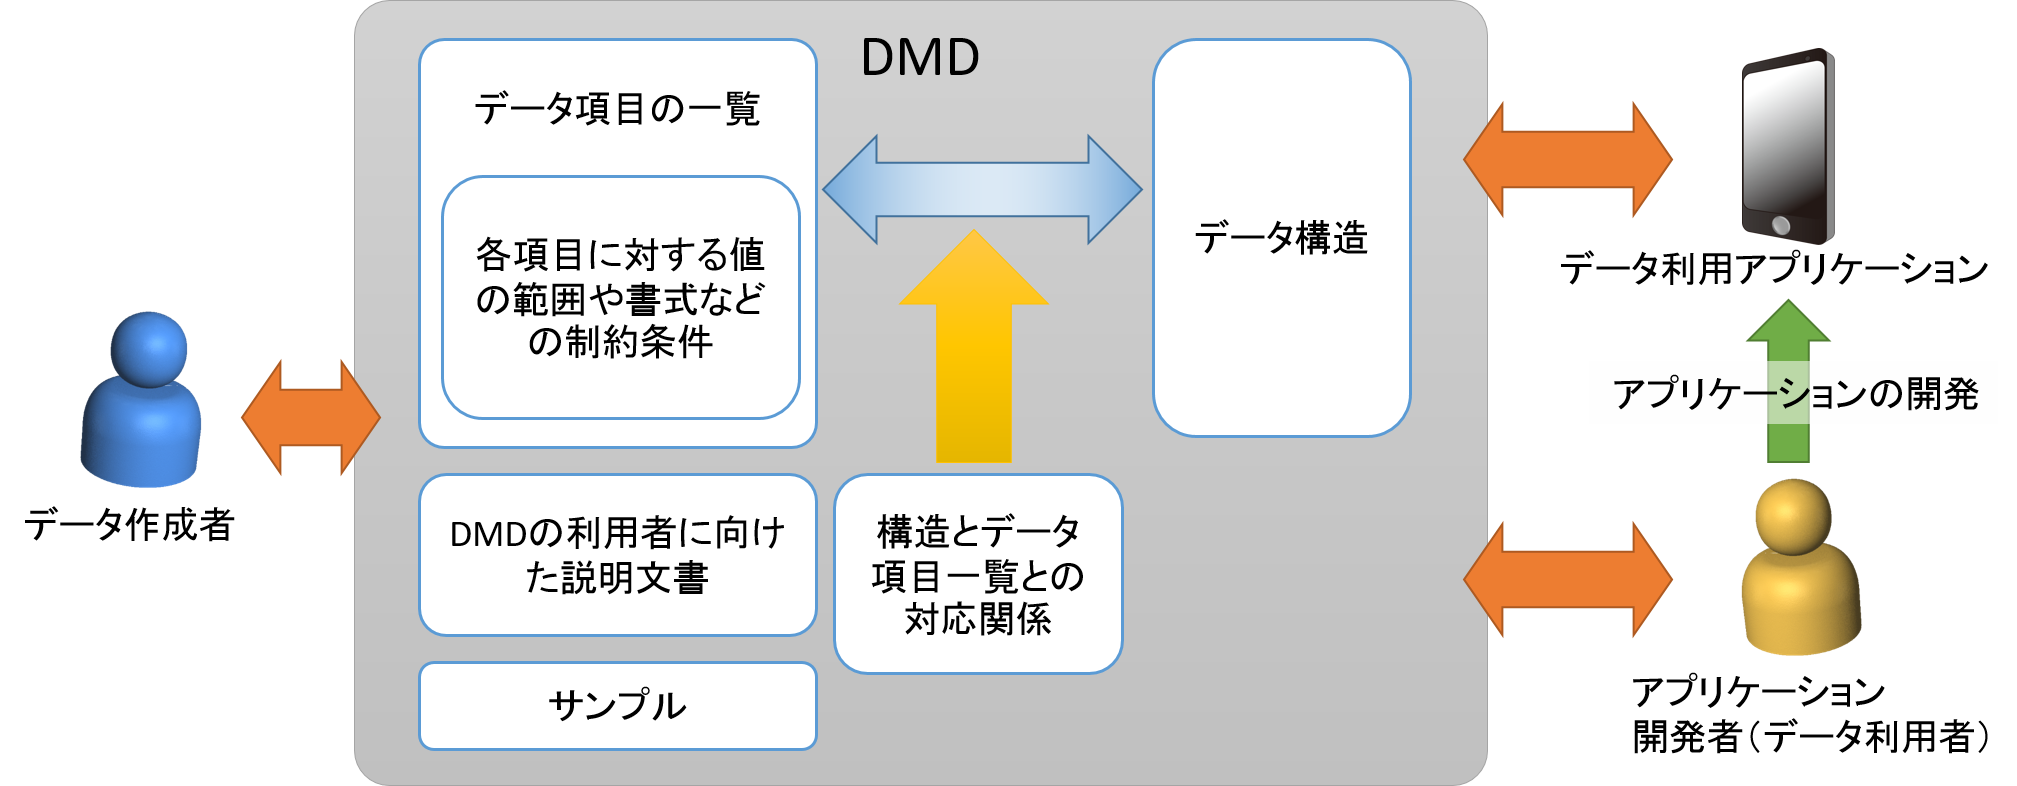 図3: DMDの内容